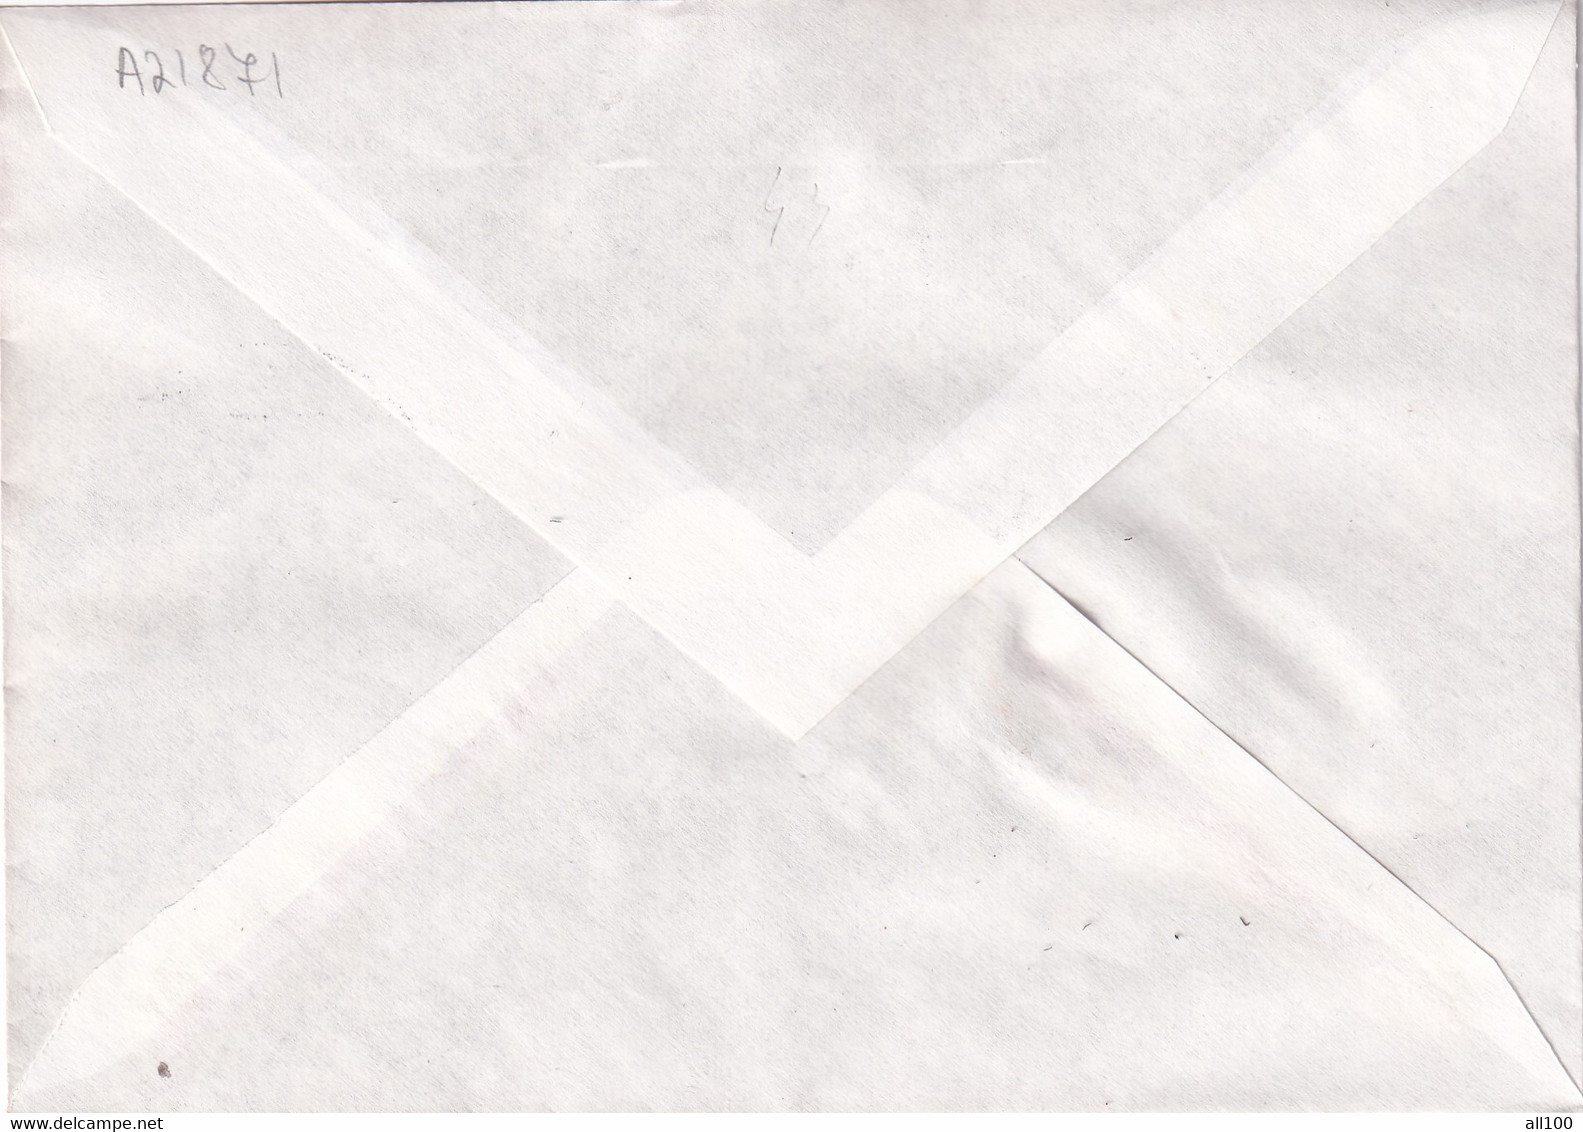 A21871 - Conseil De L'Europe Strasbourg Cover Envelope Unused 1980 Stamp France - Cartas & Documentos